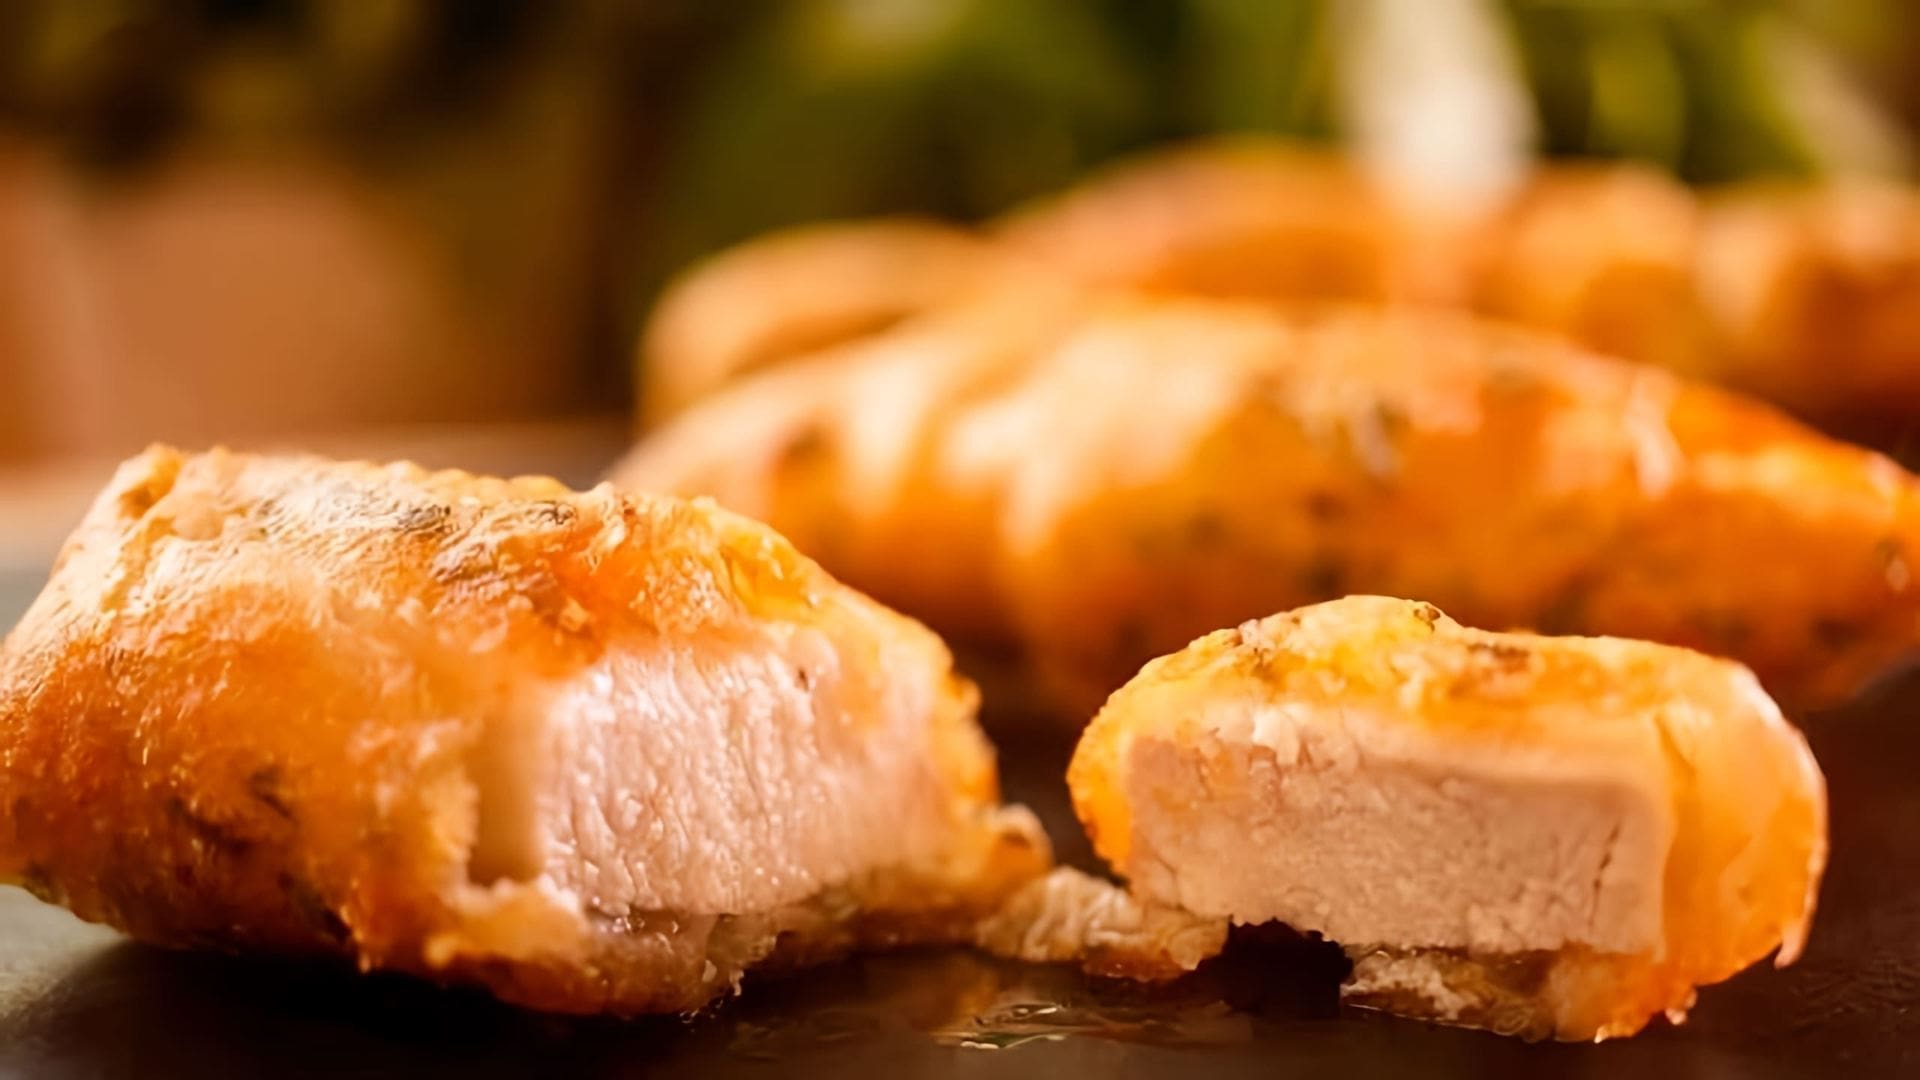 В этом видео демонстрируется процесс приготовления золотых пальчиков цыпленка, которые являются альтернативой наггетсам